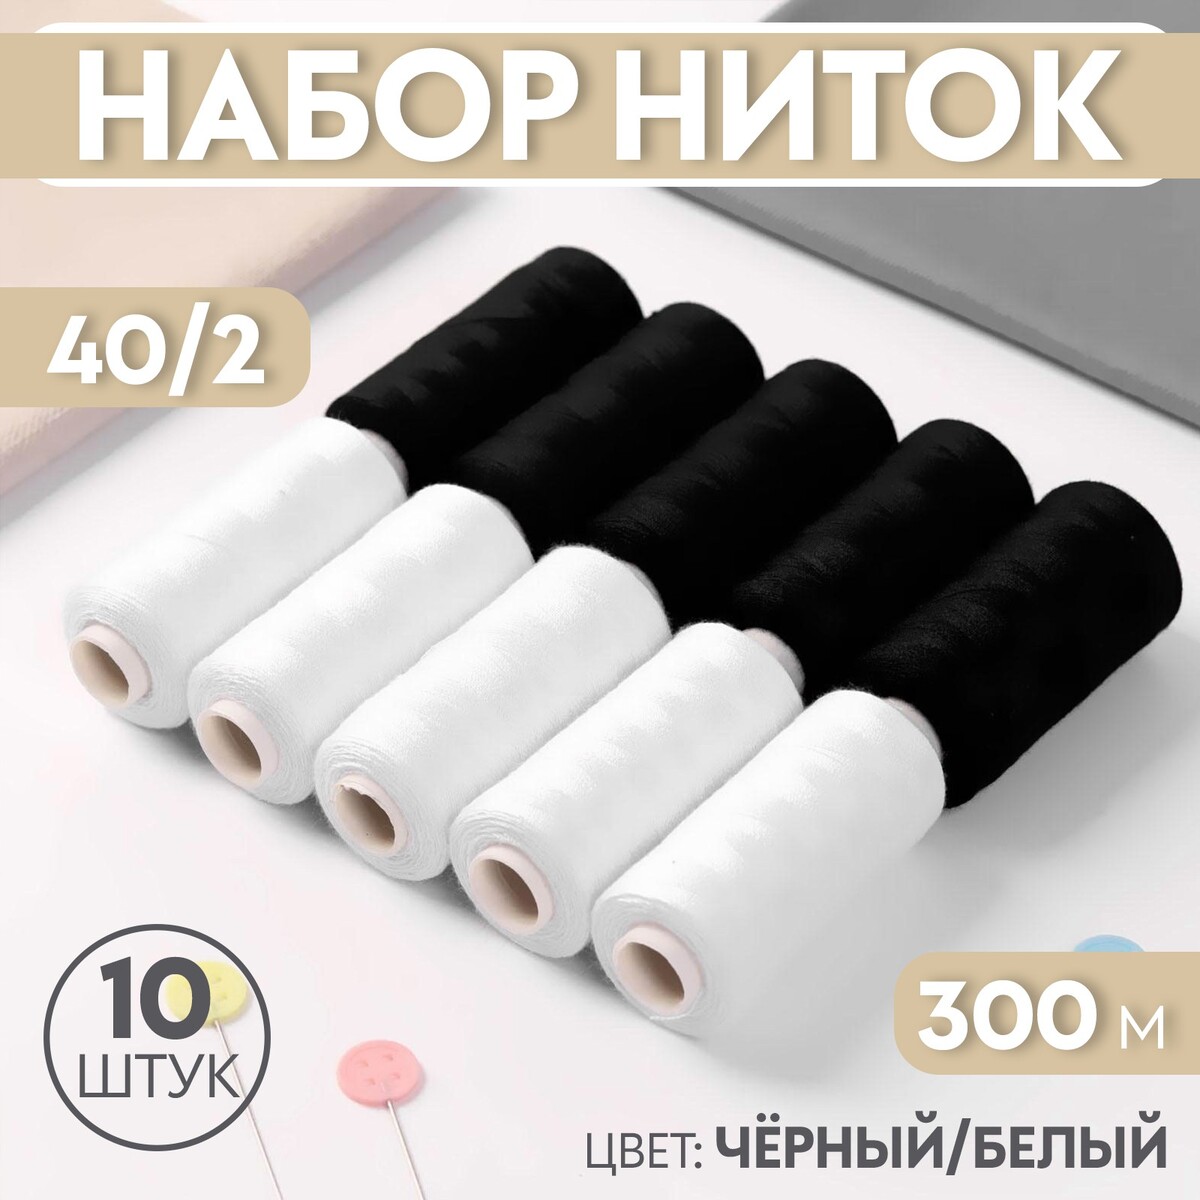 Набор ниток, 40/2, 300 м, 10 шт, цвет черный/белый набор из 4 кухонных ножей с универсальным блоком nadoba haruto